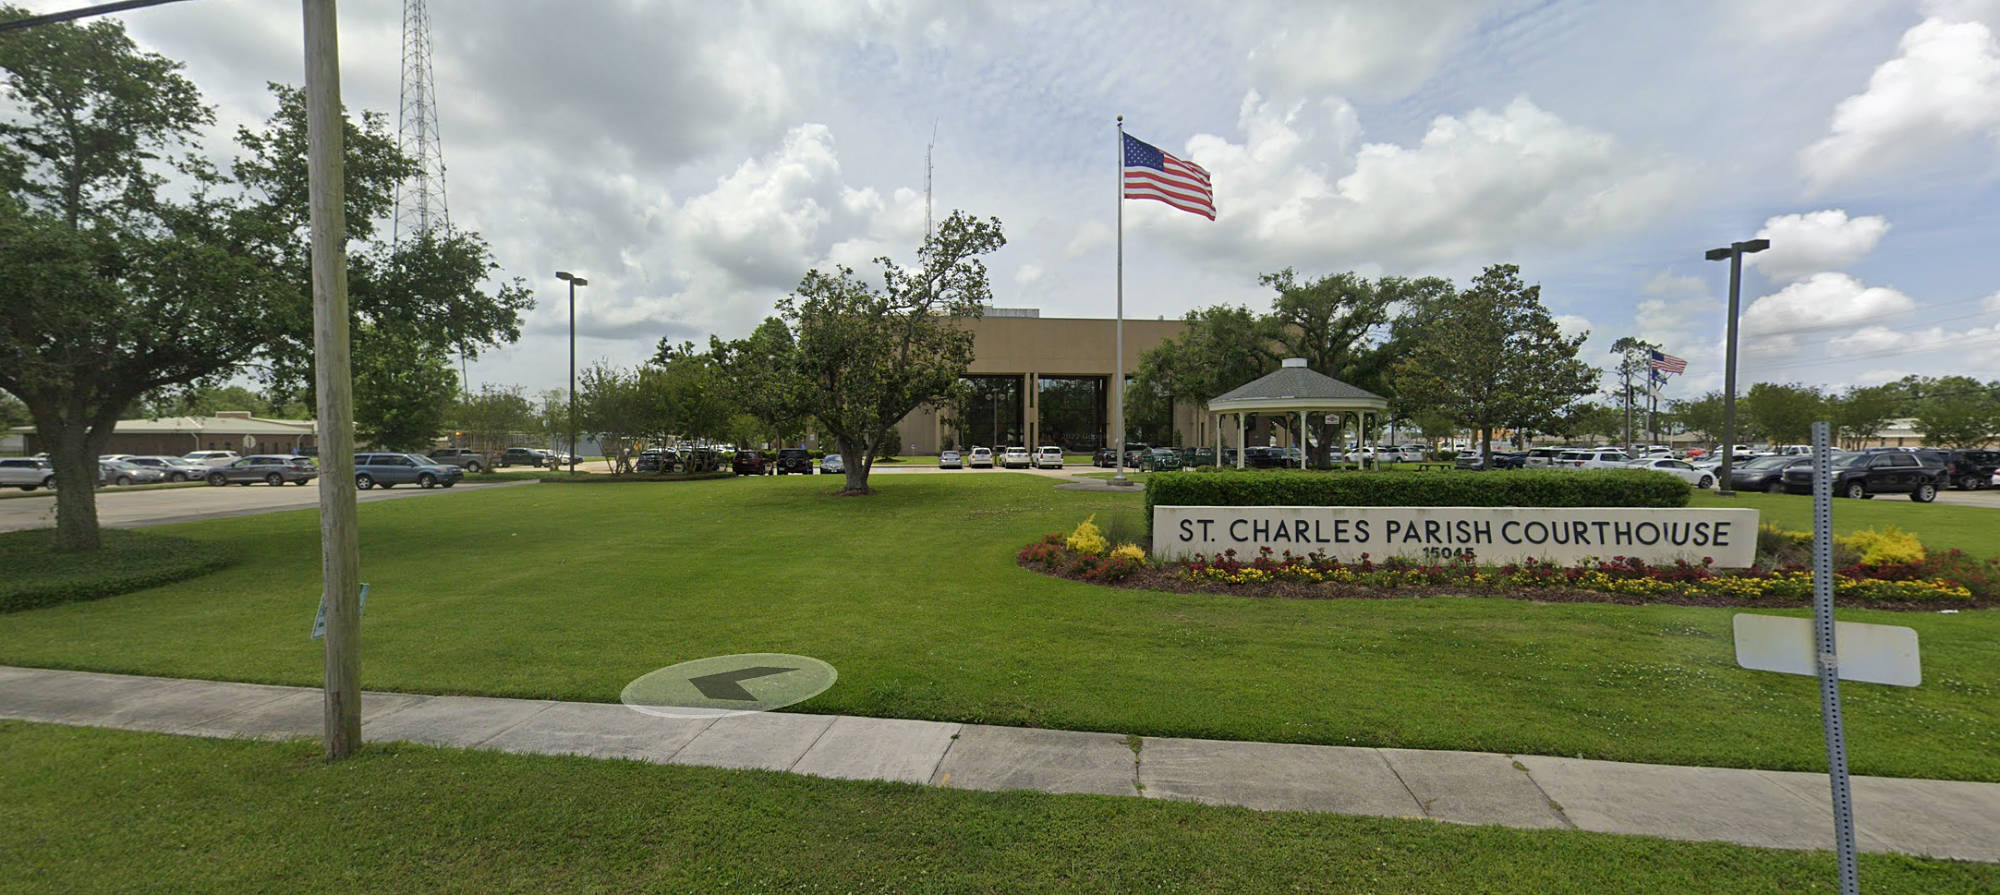 St Charles Louisiana parish courthouse photo 1